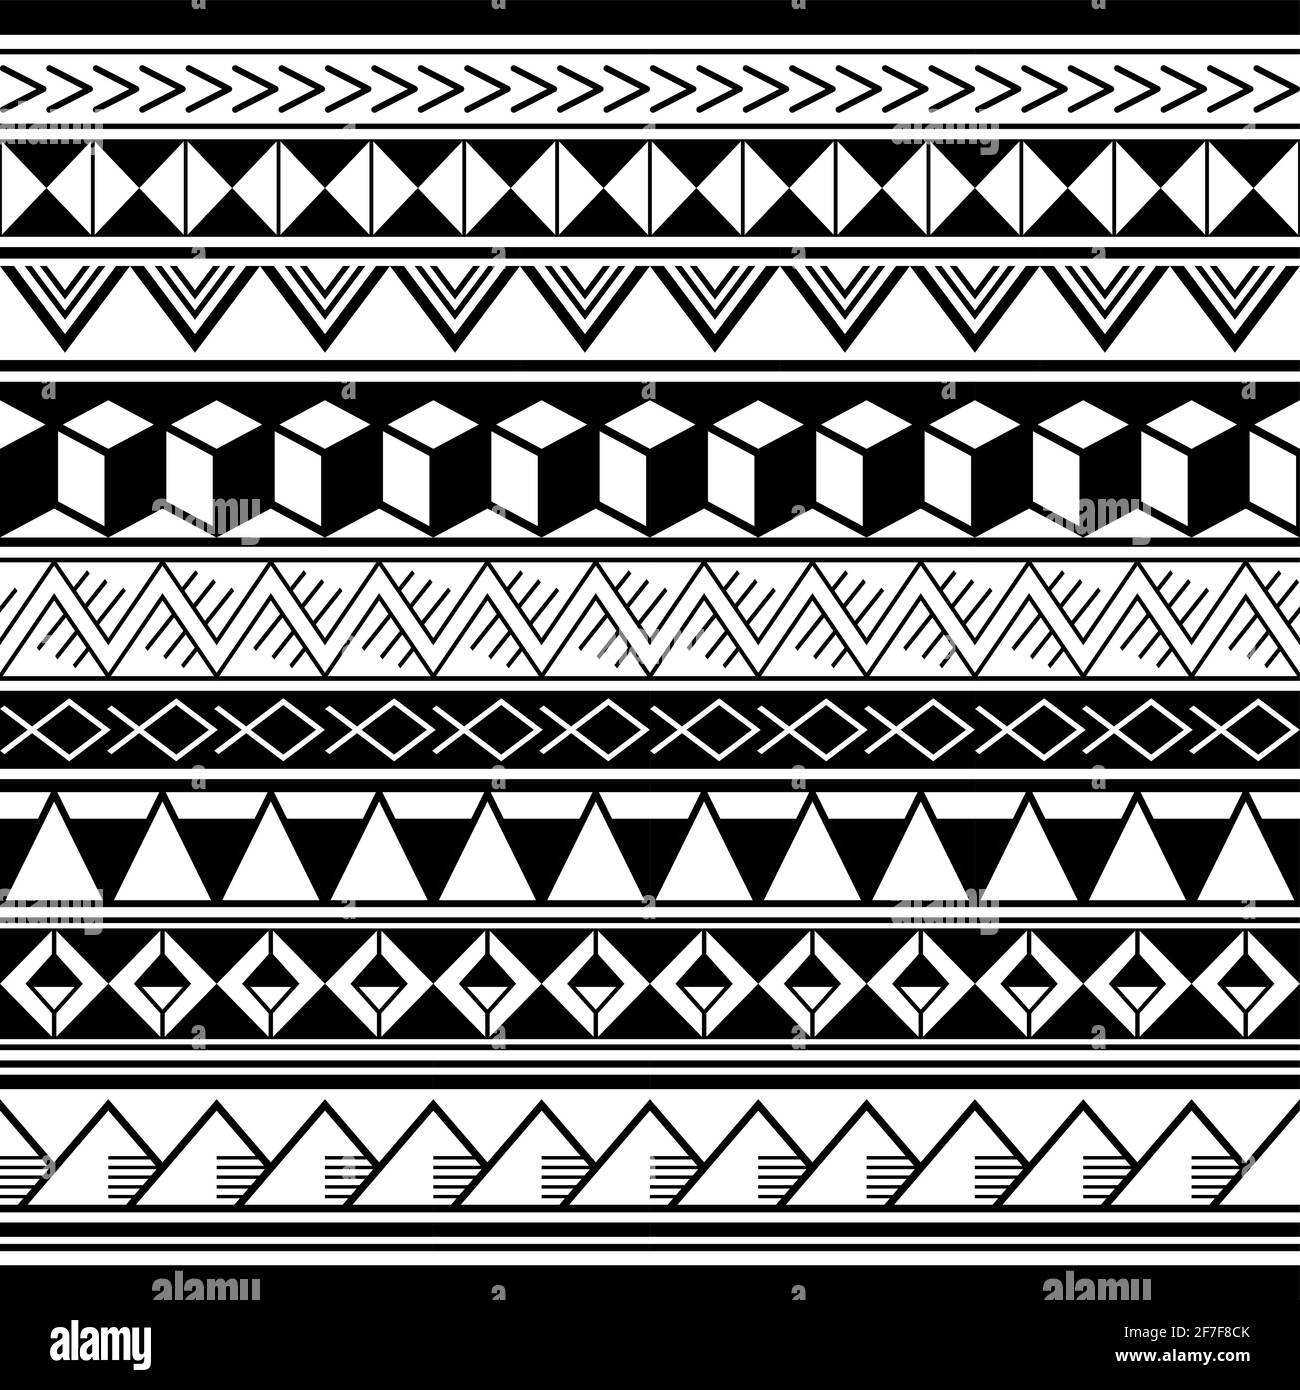 Polynesische ethnische geometrische nahtlose Vektor-Muster, retro hawaiianische Tribal-repetitive Design in schwarz und weiß Stock Vektor